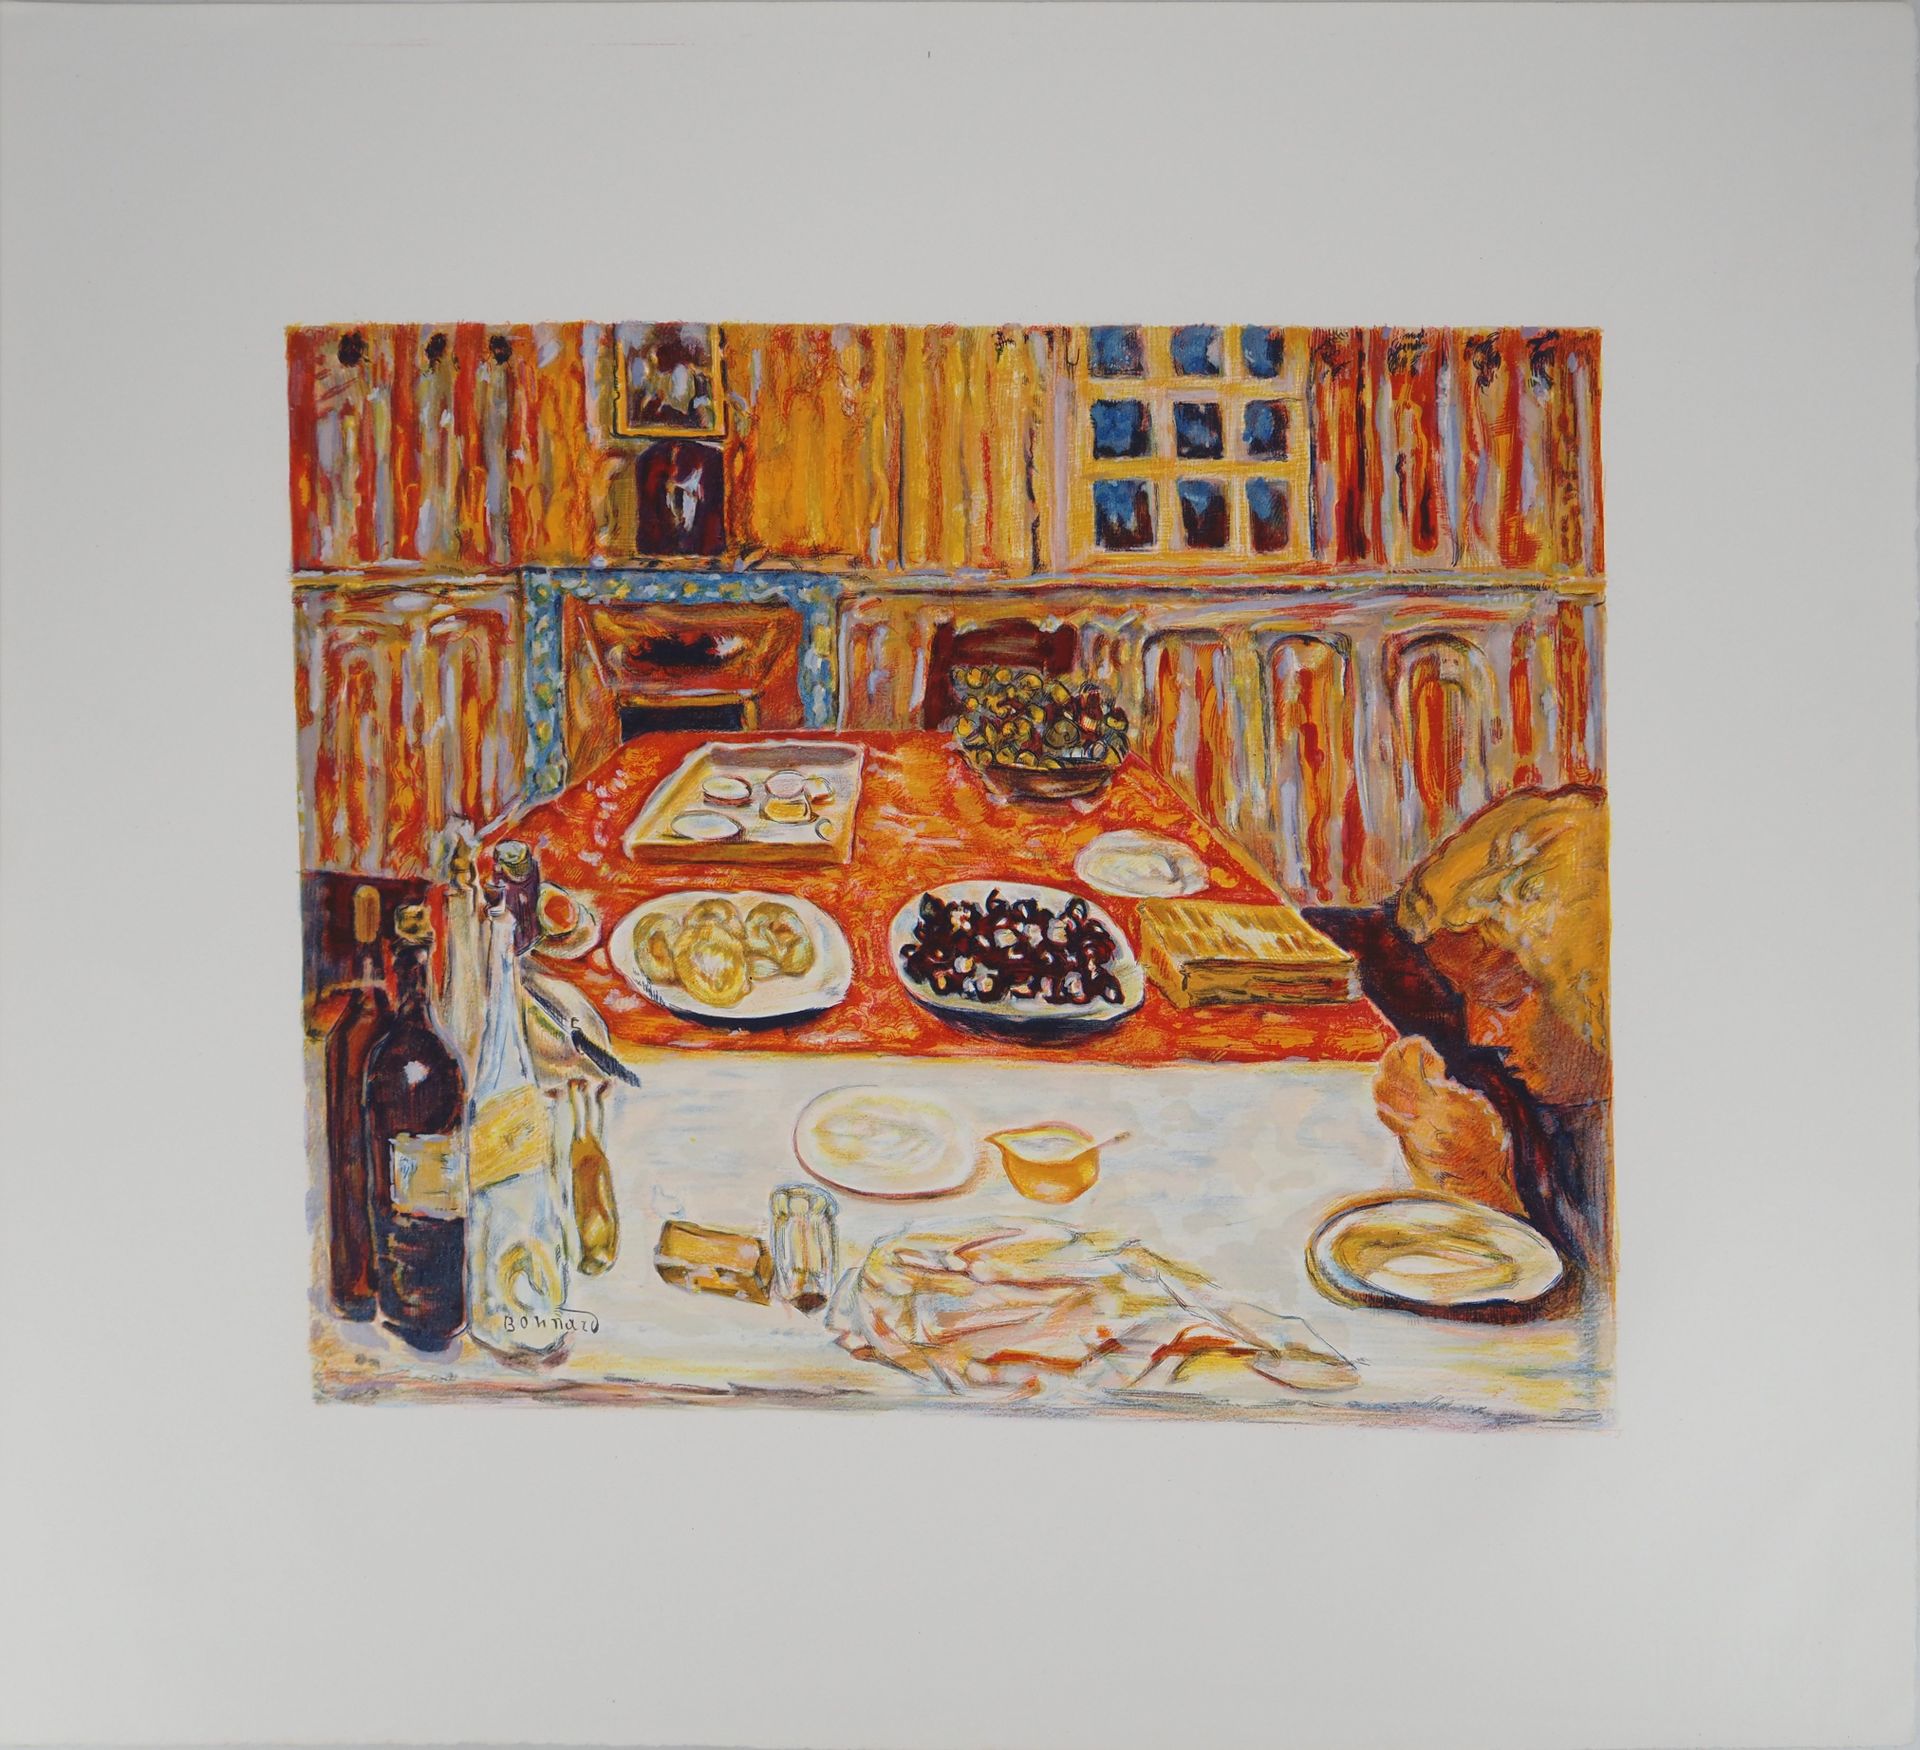 PIERRE BONNARD 皮埃尔-博纳尔 (1867-1947)

橙色的午餐

根据艺术家的画作制作的彩色石版画（Atelier Mourlot）。

板&hellip;